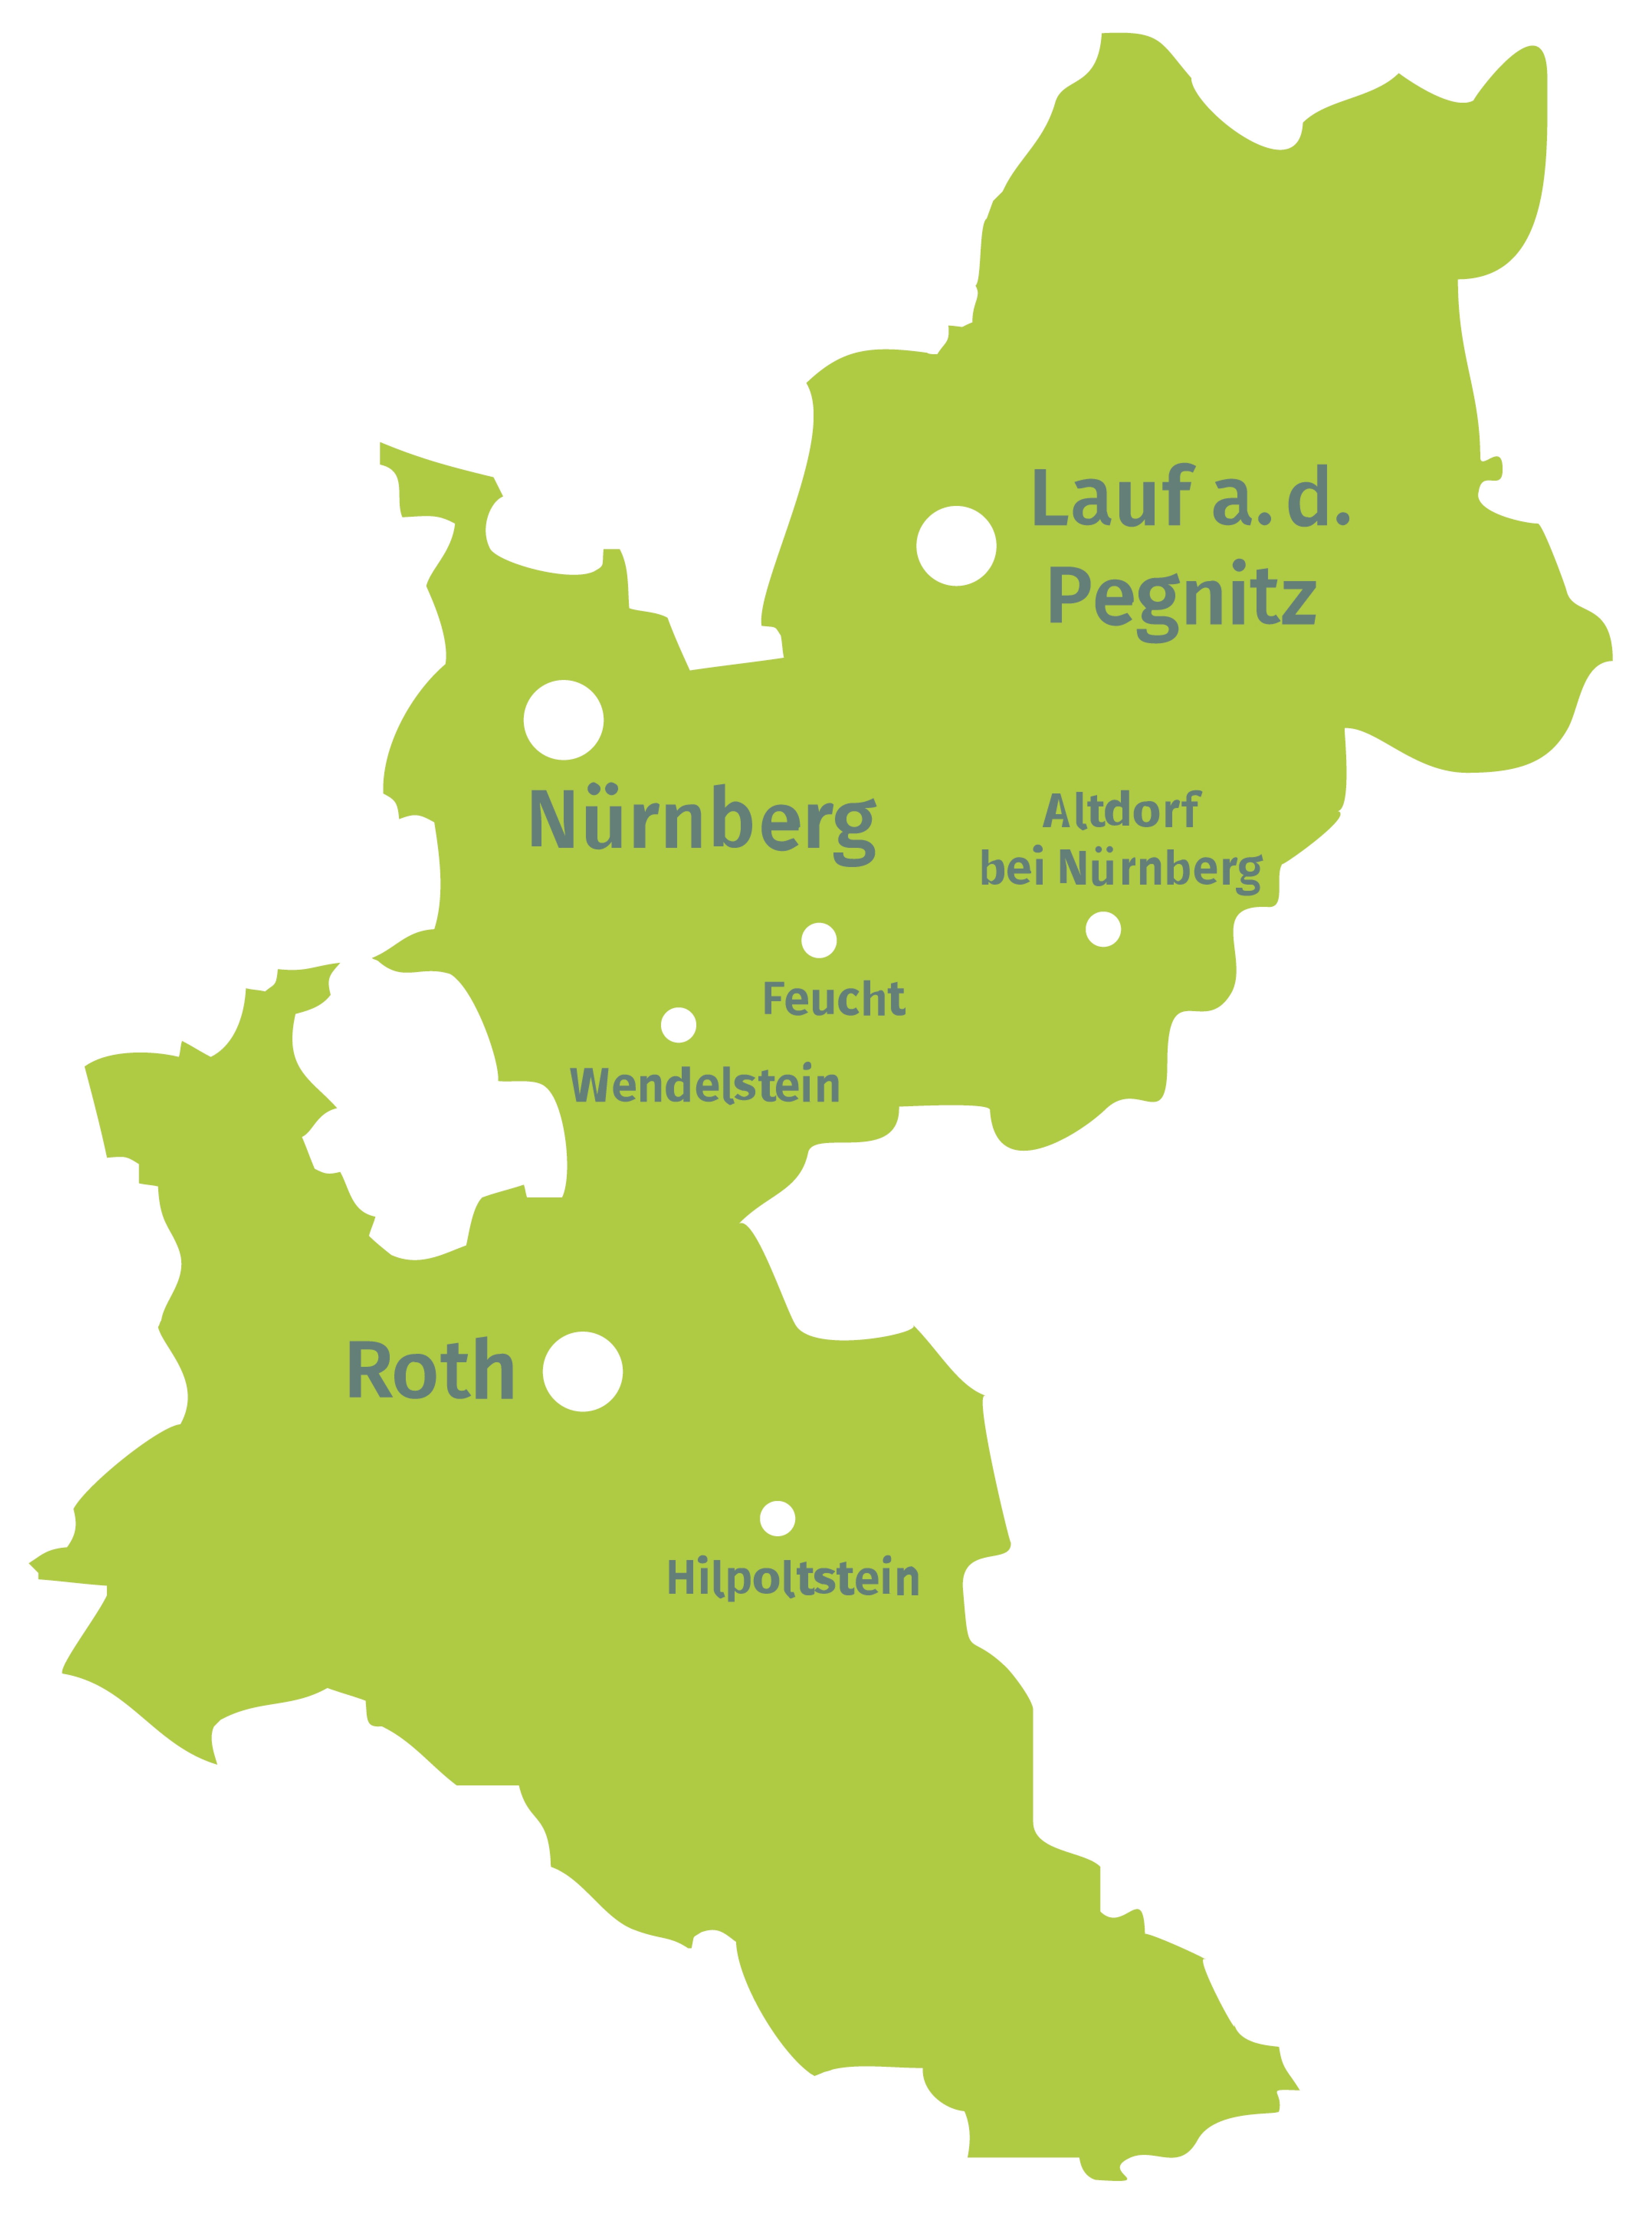 Das Gebiet der Öko-Modellregion umfasst die Stadt Nürnberg sowie die Landkreise Nürnberger Land und Roth